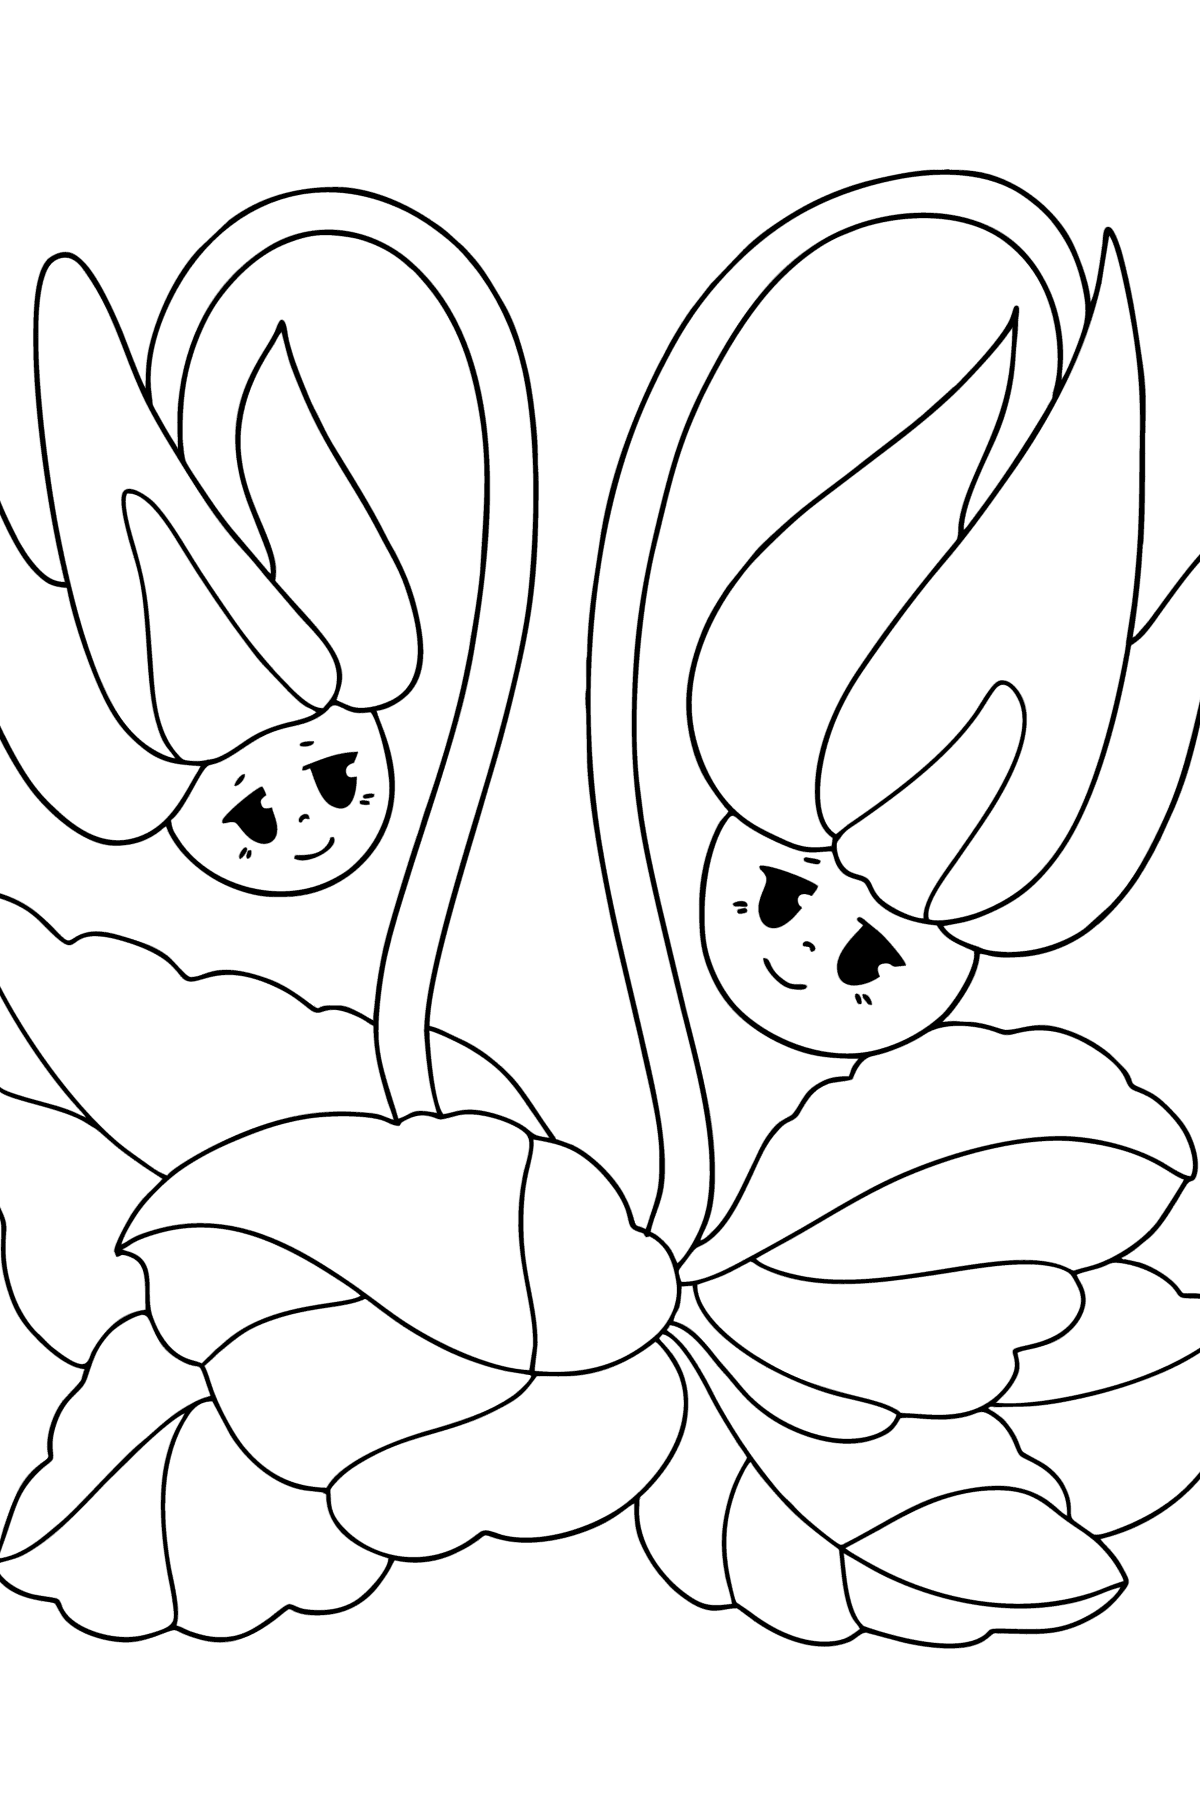 Раскраска Цикламен, цветы с глазами - Картинки для Детей